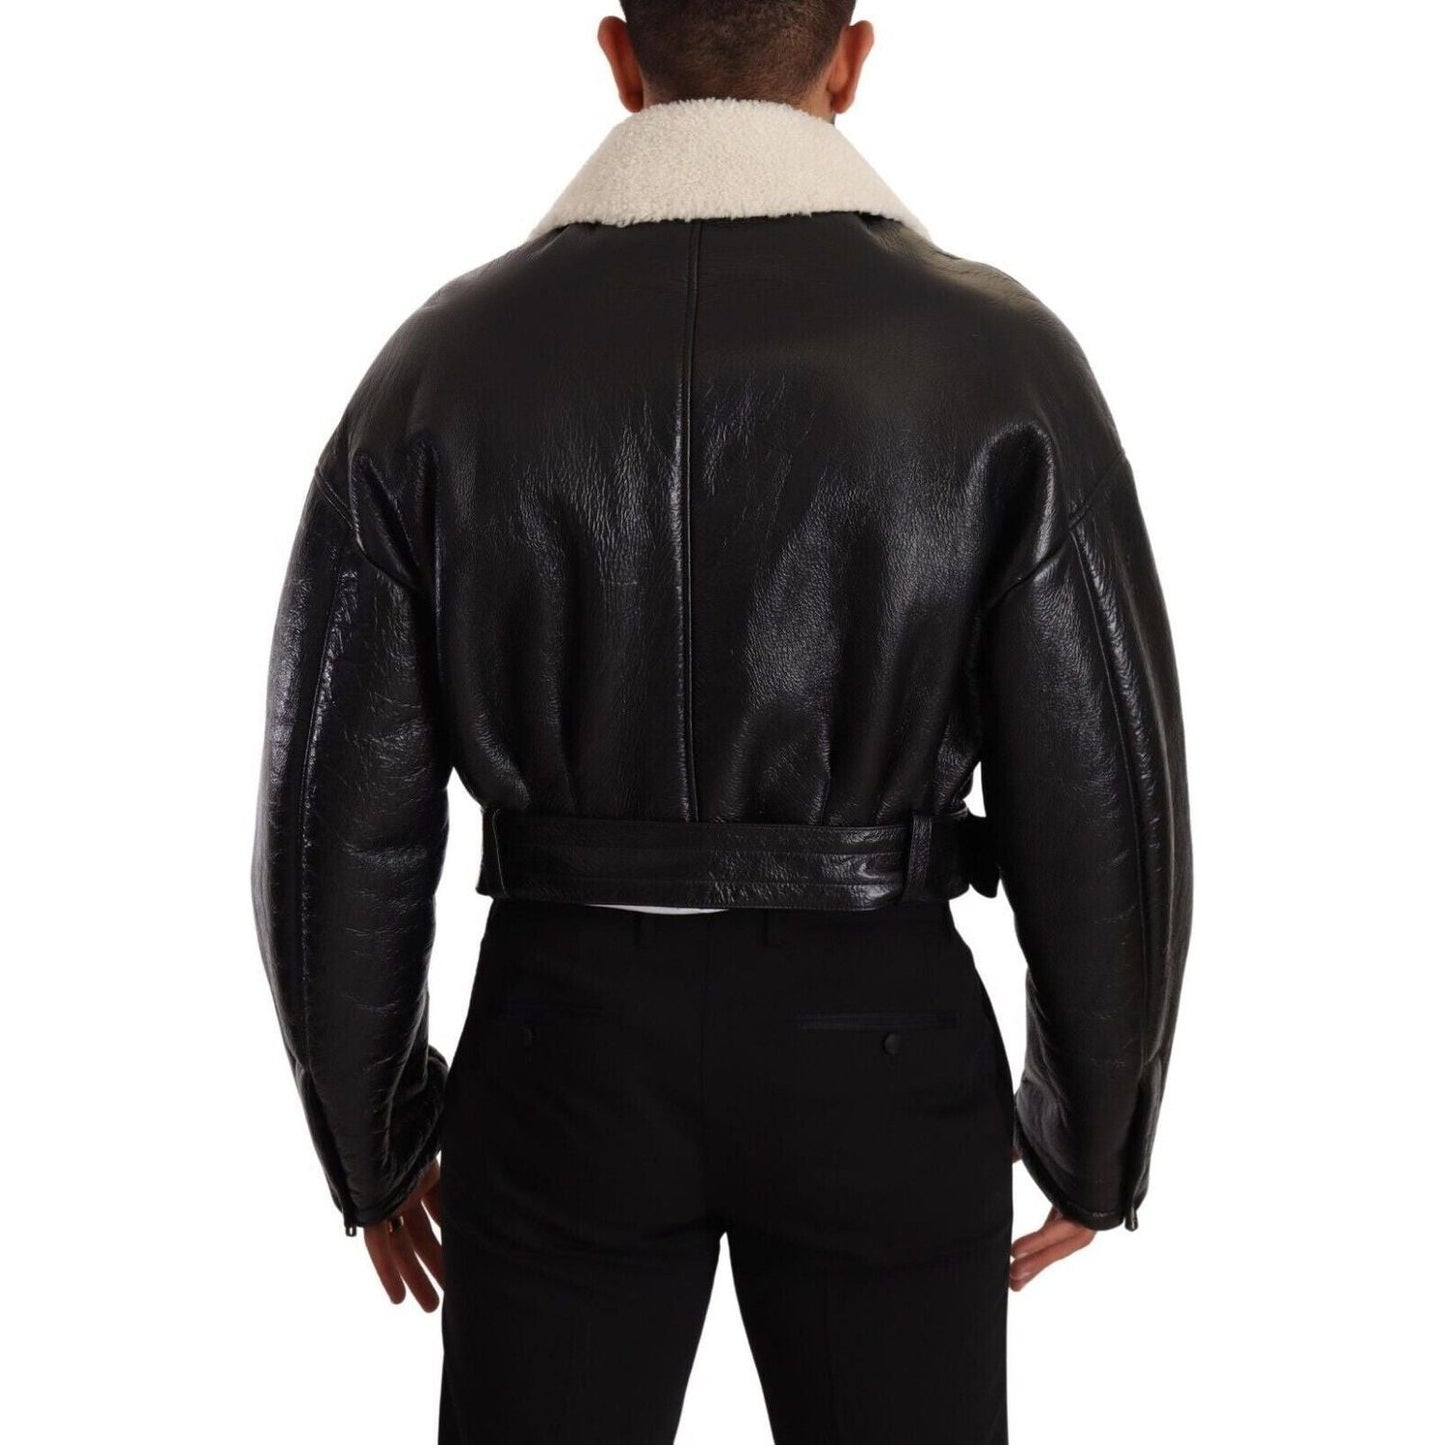 Dolce & Gabbana Elegant Shearling Biker Jacket black-leather-shearling-biker-coat-jacket